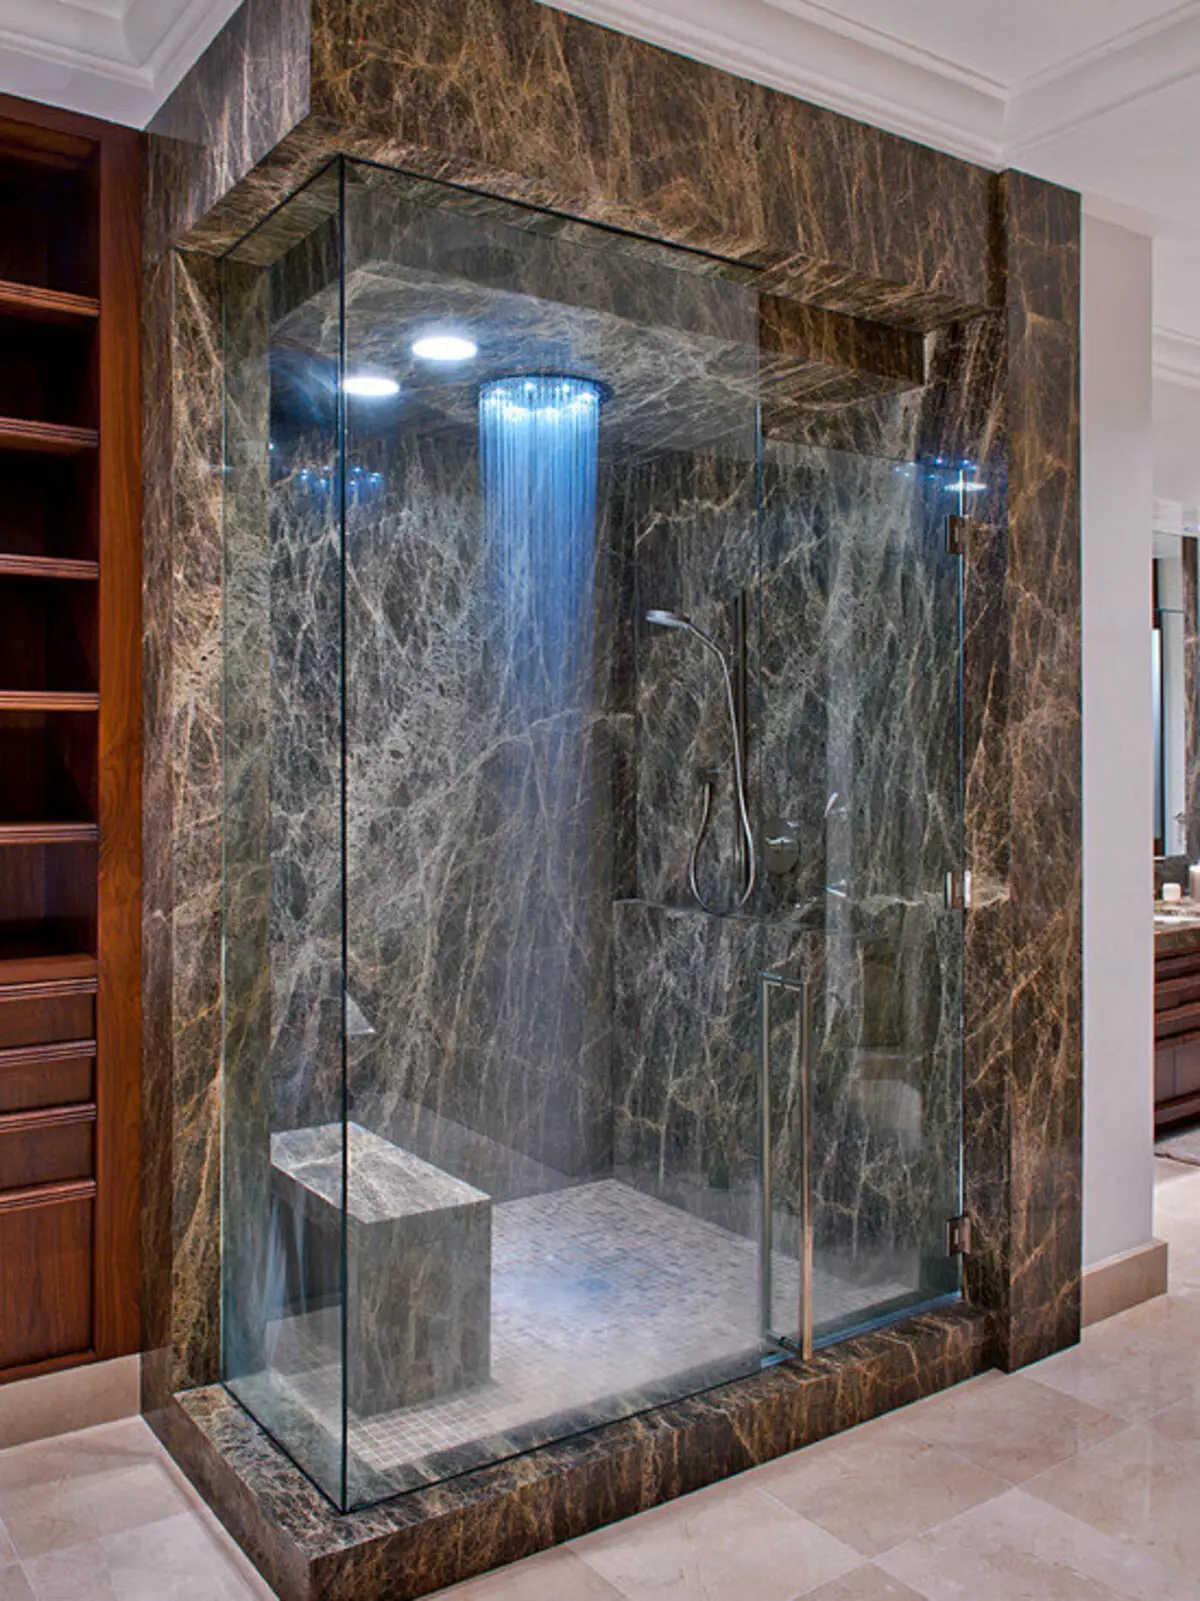 Suihku kylpyhuone ilman mökkiä (86 valokuvaa): Kylpyhuoneen suunnitteluvaihtoehdot suihkulla ilman kuormalavaa ja laattakaapit, projektit 21384_44